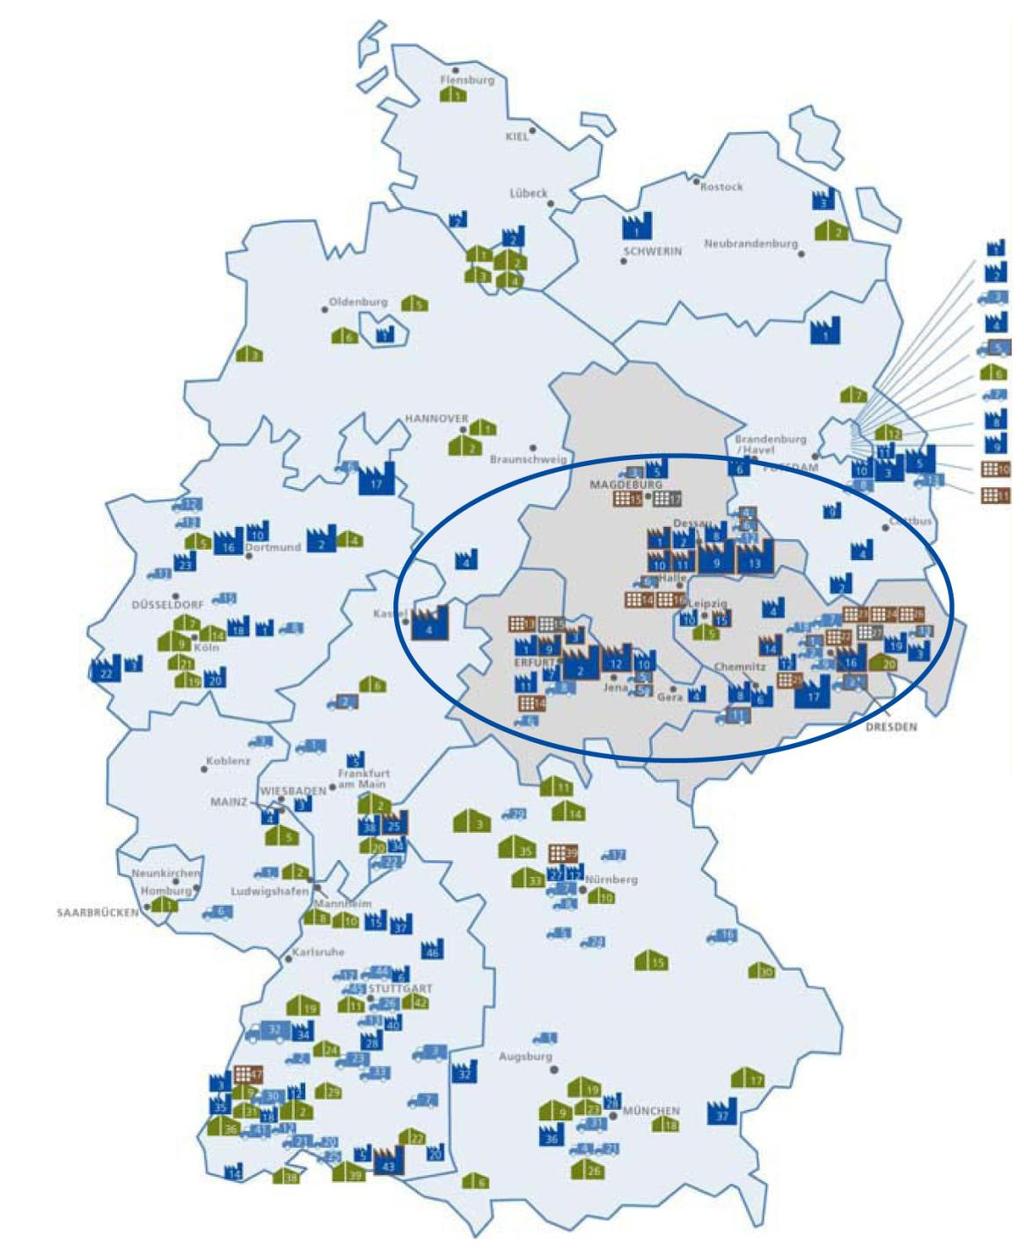 Mitteldeutschland weltweit führende Solarregion Zulieferer Industrie Distributoren Hochschulen/Institute Ministerien Im Solarvalley Mitteldeutschland: 43% des deutschen PV-Industrieumsatzes 10.